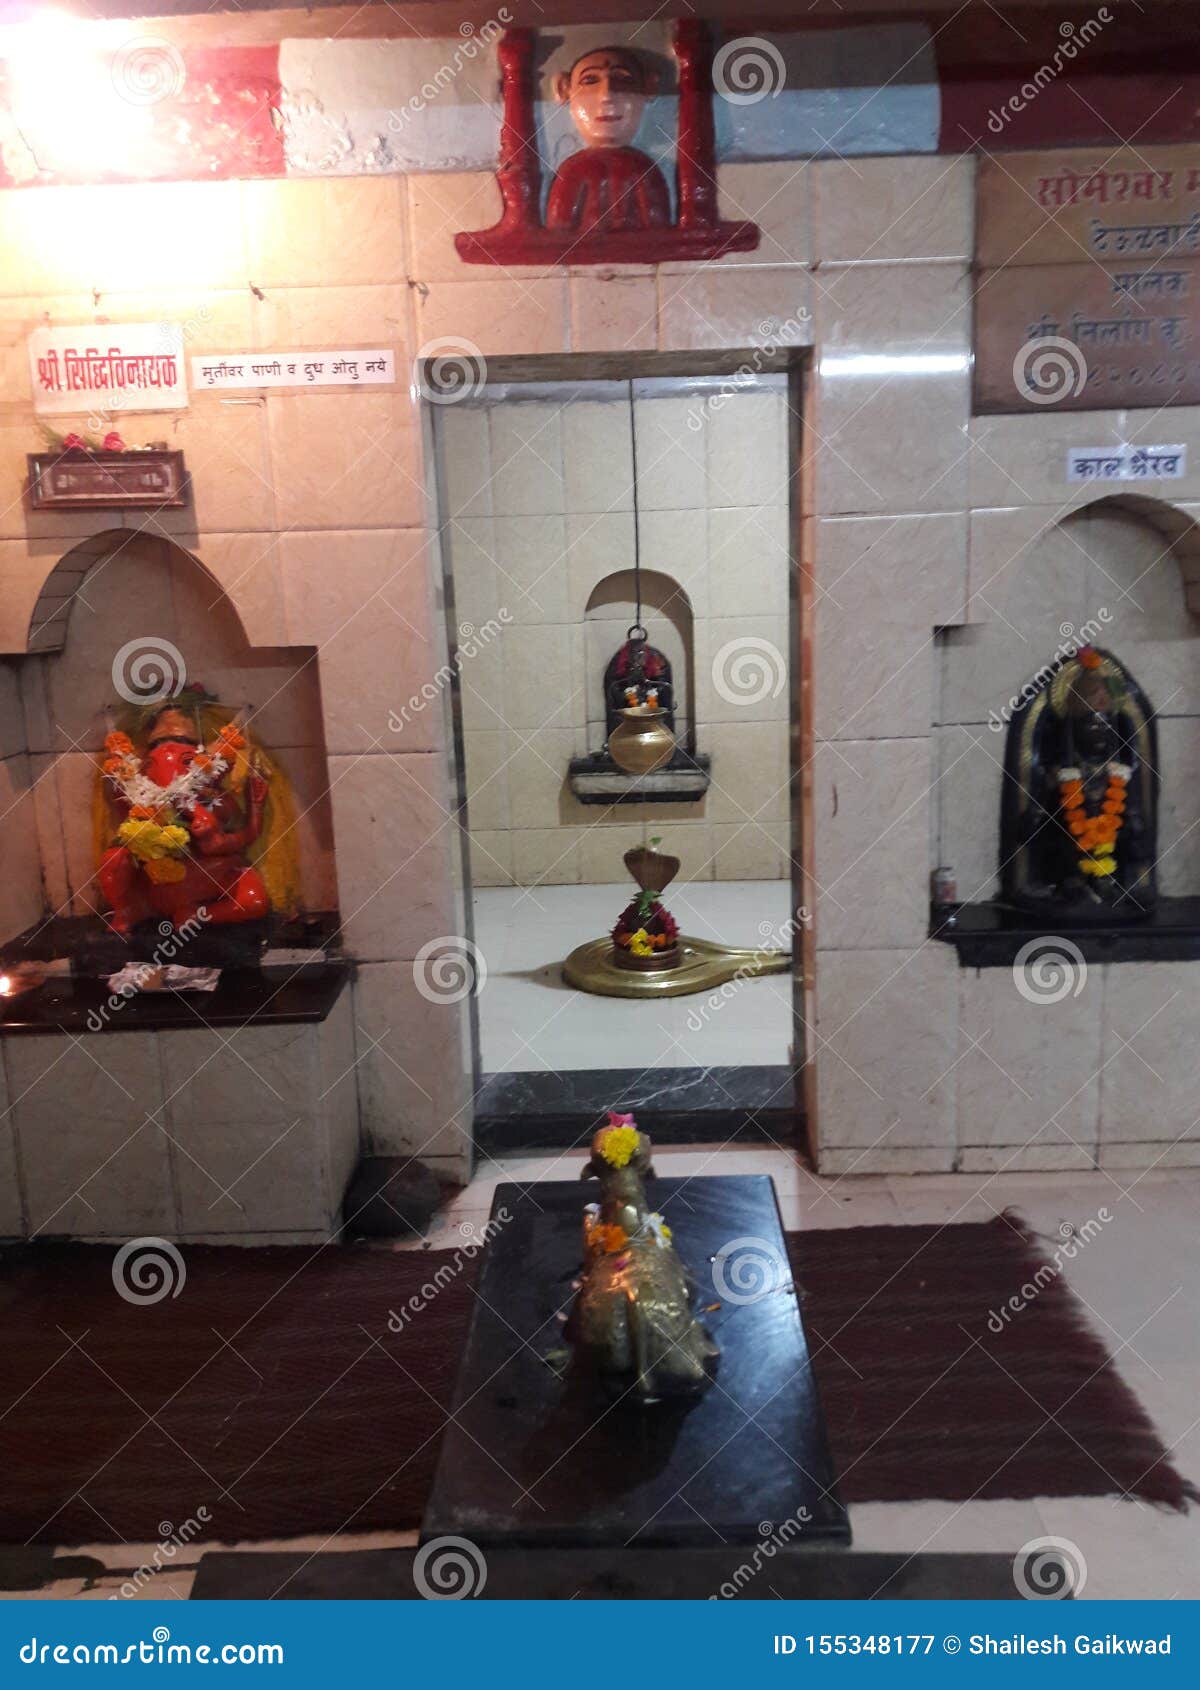 indian temple in mumbai location..